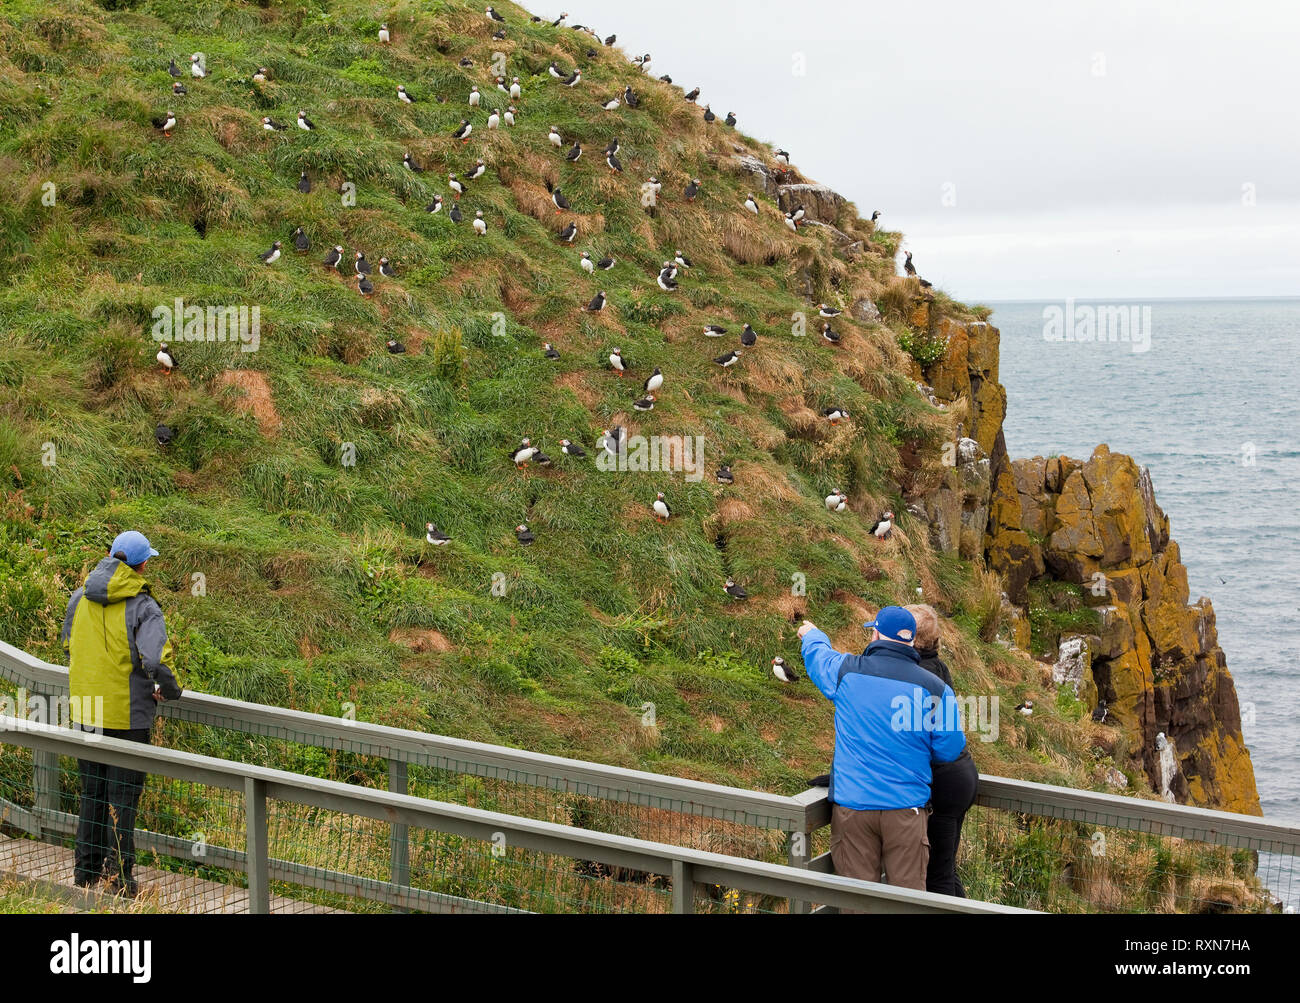 Costruita la passerella consentendo ai visitatori di vedere i puffini Atlantico nel loro ambiente naturale da una distanza molto ravvicinata, Hafnarholmi, Islanda Foto Stock